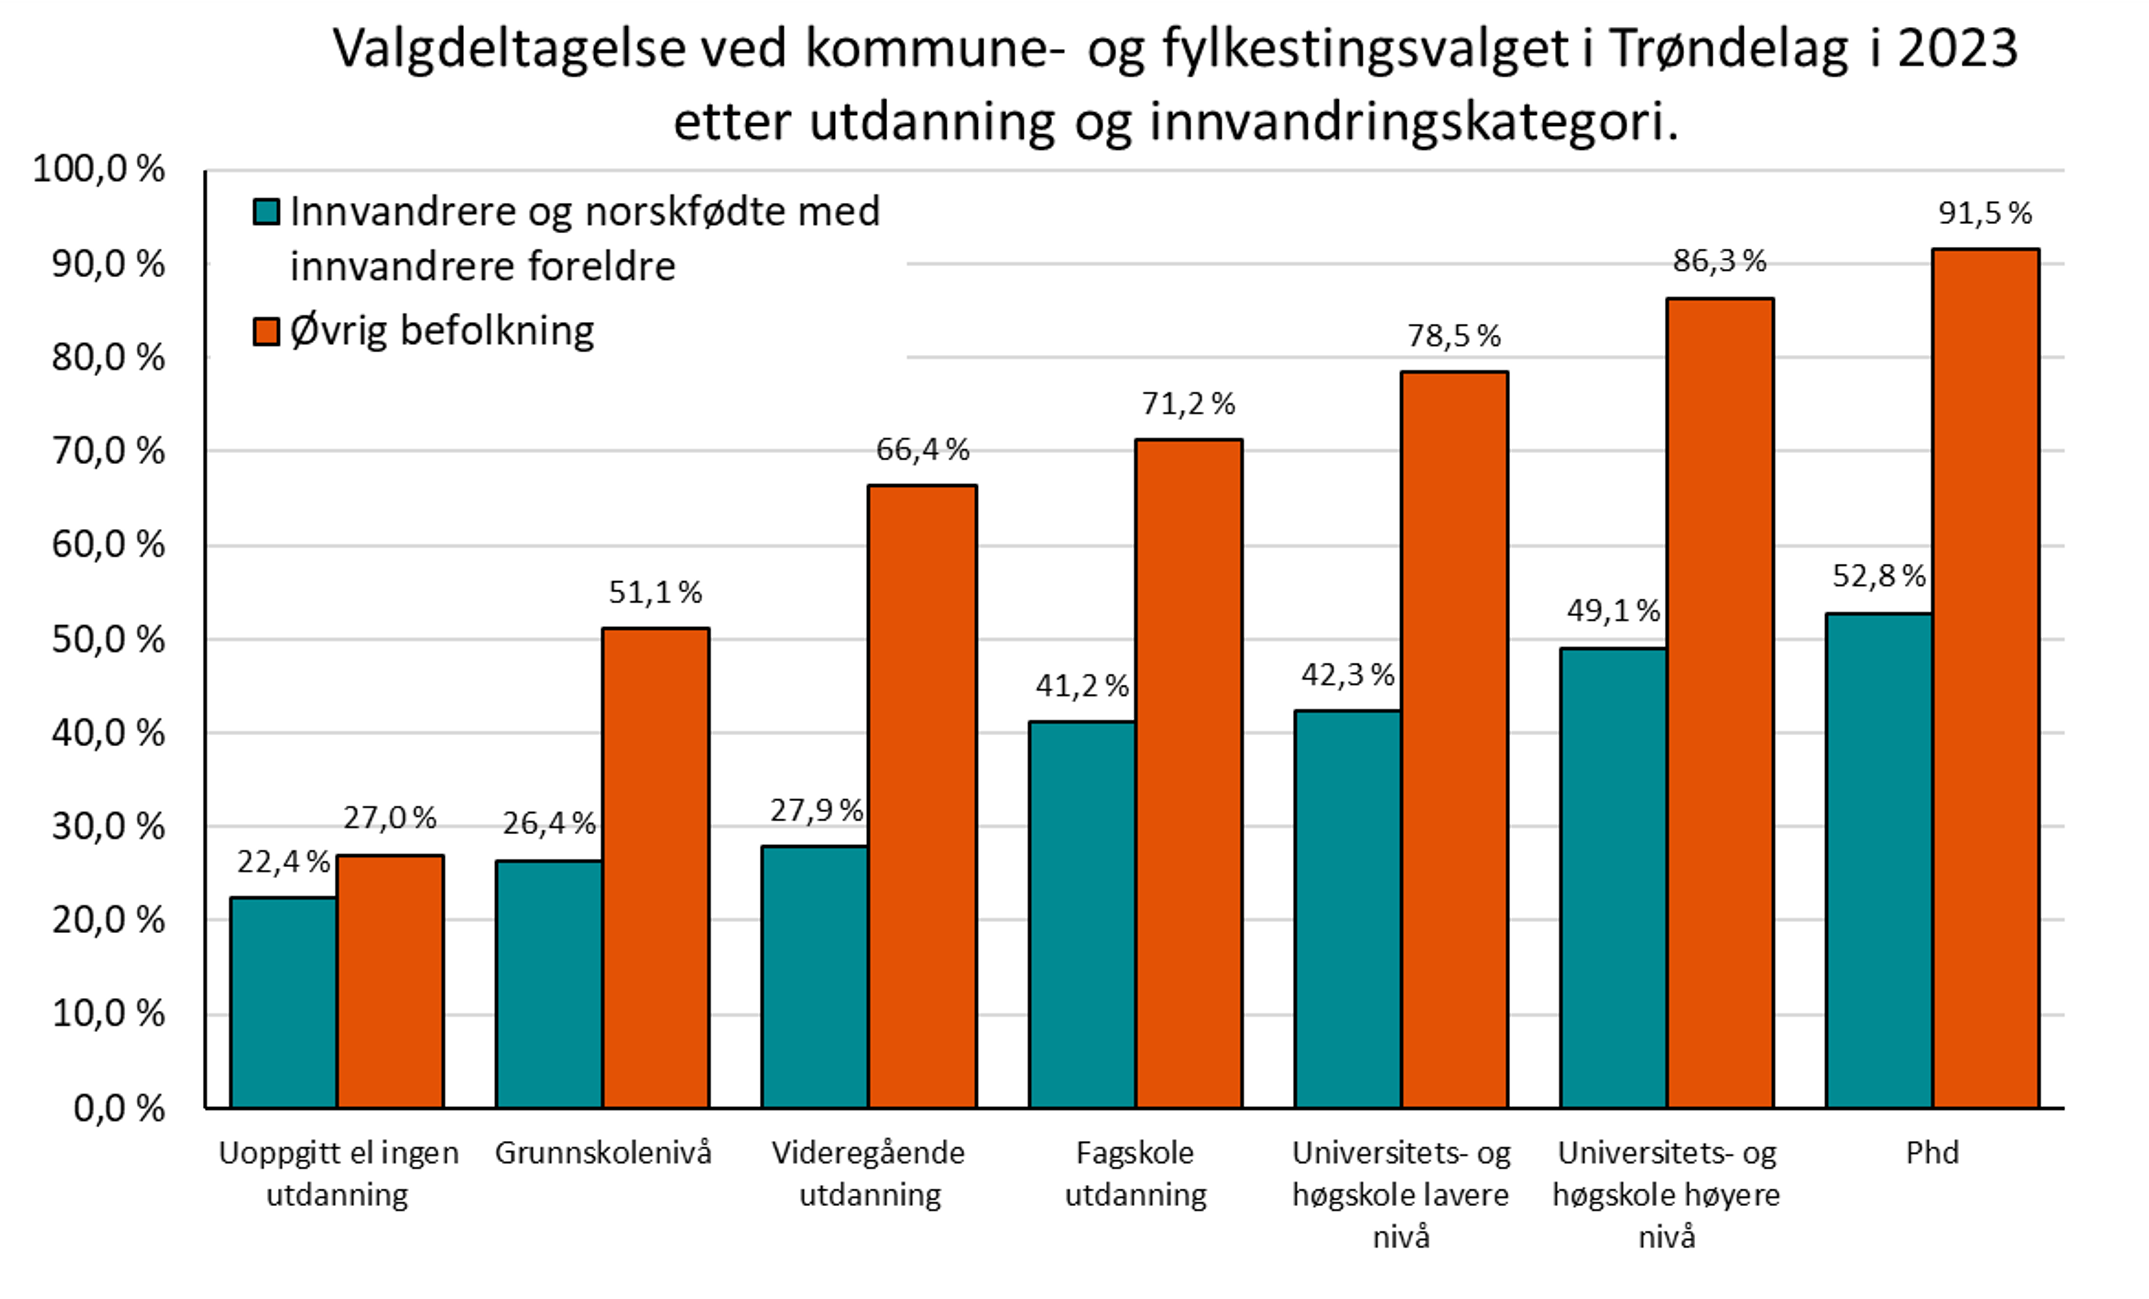 Valgdeltagelse ved kommune- og fylkestingsvalget i Trøndelag i 2023 etter utdanning og innvandringskategori